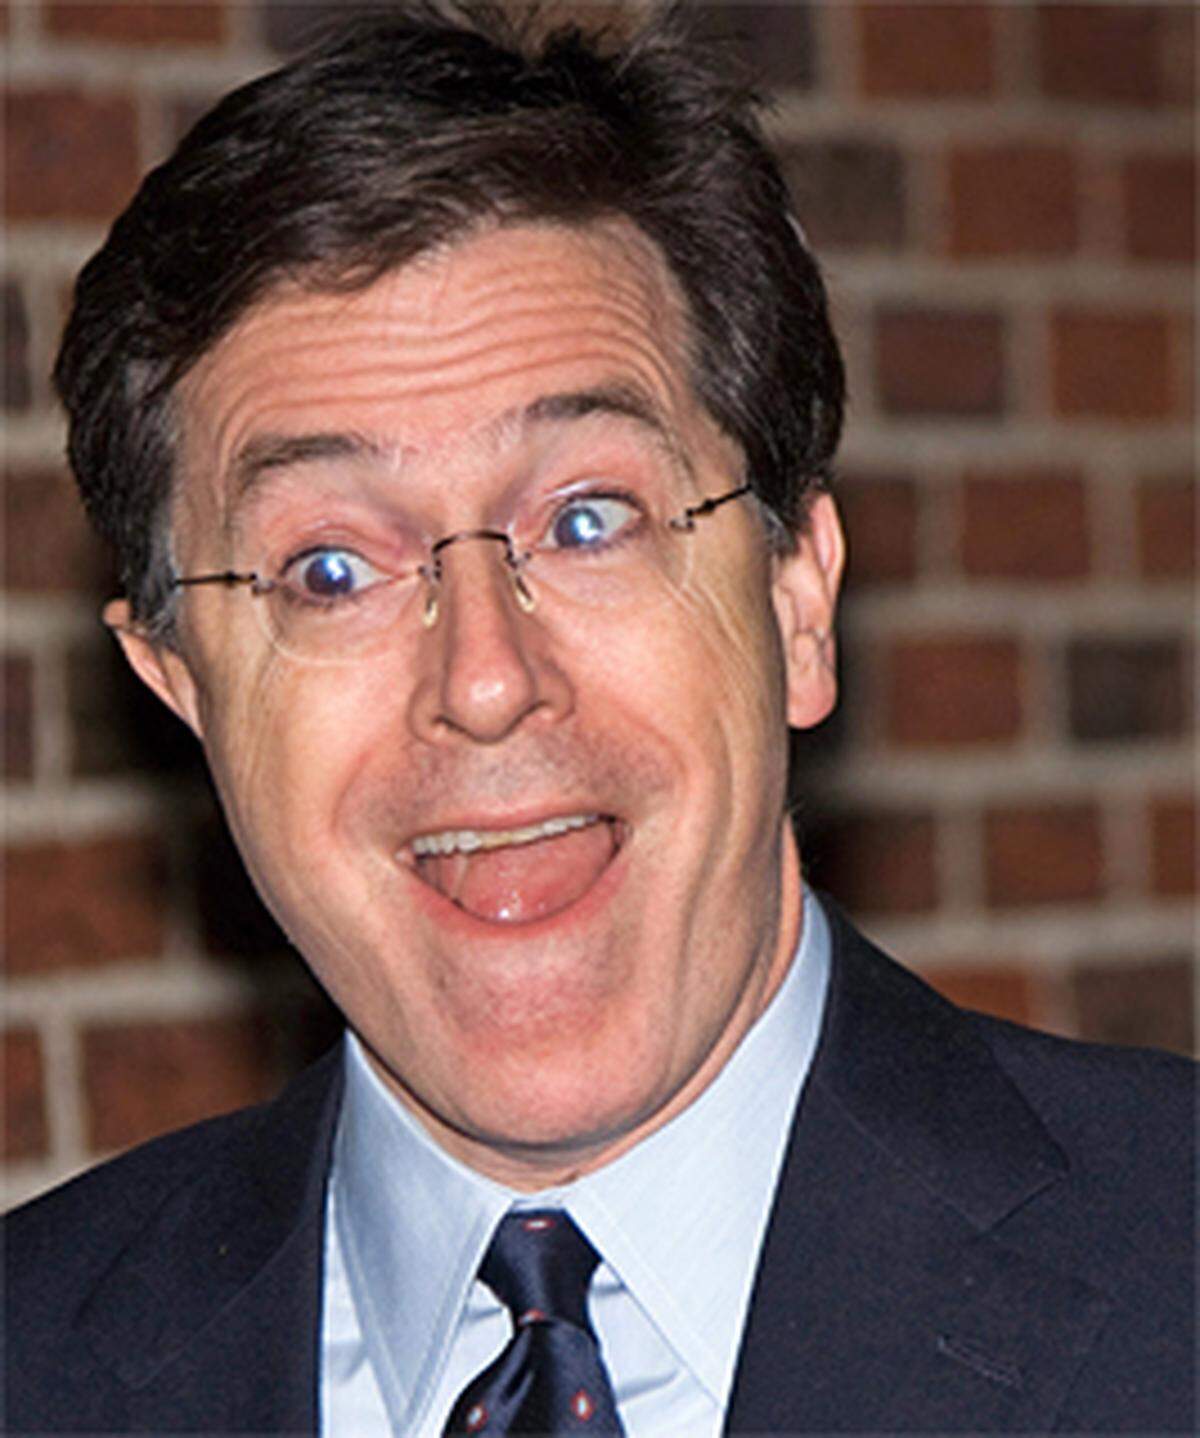 Auch im US-Fernsehen setzen immer mehr Shows auf Manager-Bashing. So schwenkt US-Komiker Stephen Colbert in seiner Sendung "Colbert Report" schon mal die "Anti CEO-Mistgabel".Scherzhaft fordert er die aufgebrachte Menge auf, ihm zu folgen: "Sollte der Pöbel siegen, bekomme ich 165 Millionen. Scheitern wir, bekomme ich nichts - außer meinem Bonus: 165 Mio. Dollar".Zur Info: AIG-Manager haben trotz Milliardenverlusten 165 Mio. Dollar Boni erhalten.